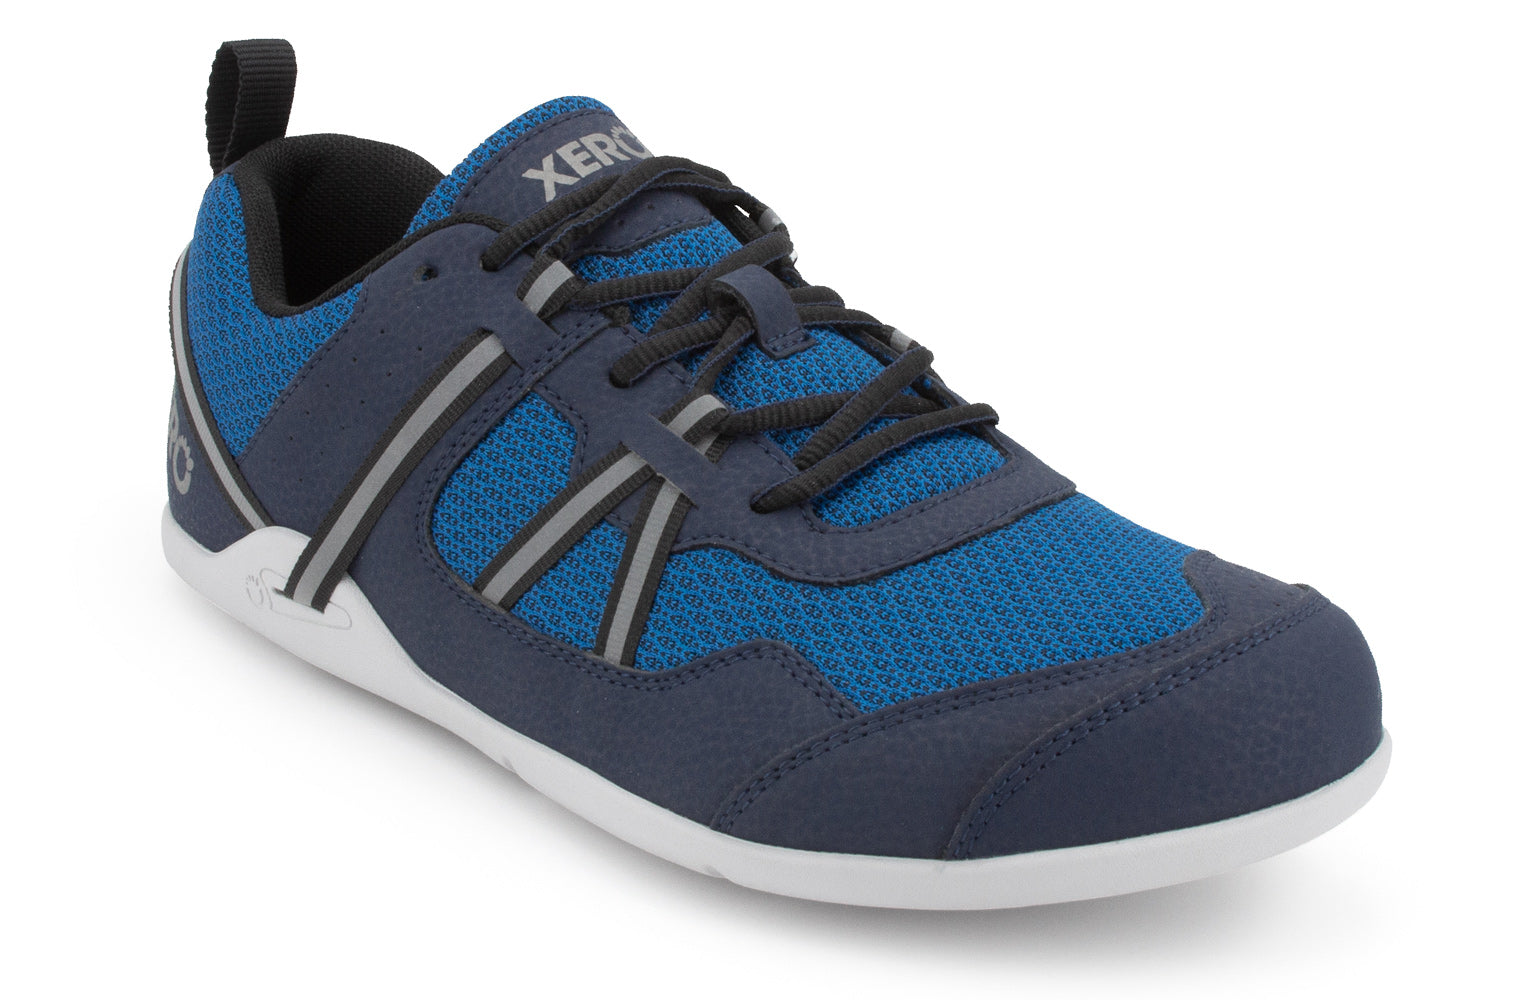 Xero Shoes Prio barfods løbesko/træningssko til mænd i farven mykonos blue, vinklet